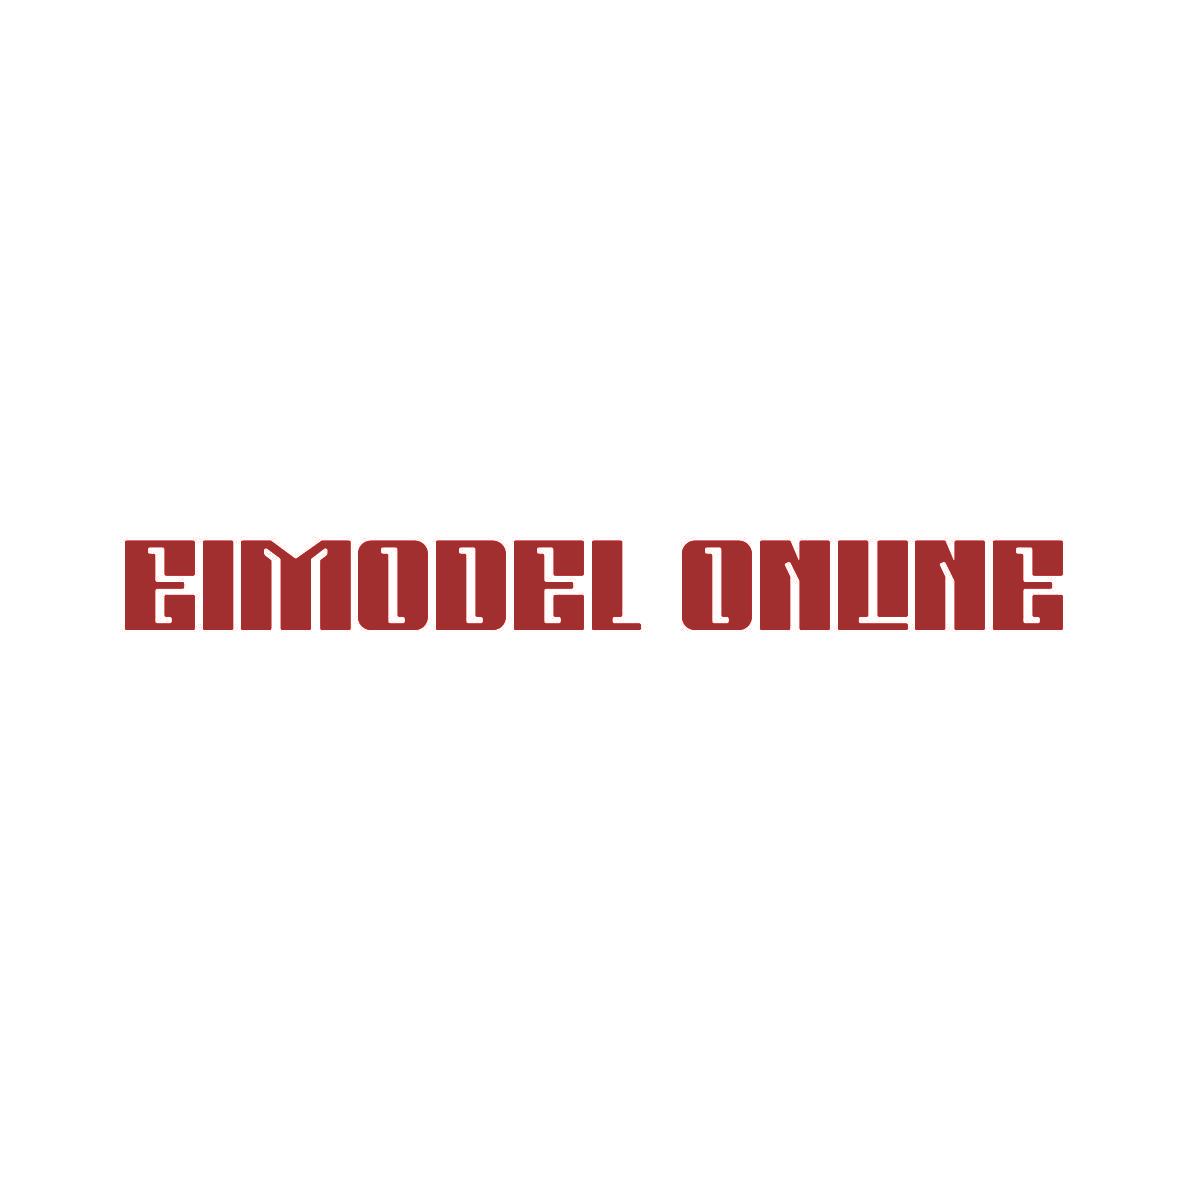 EIMODEL ONLINE